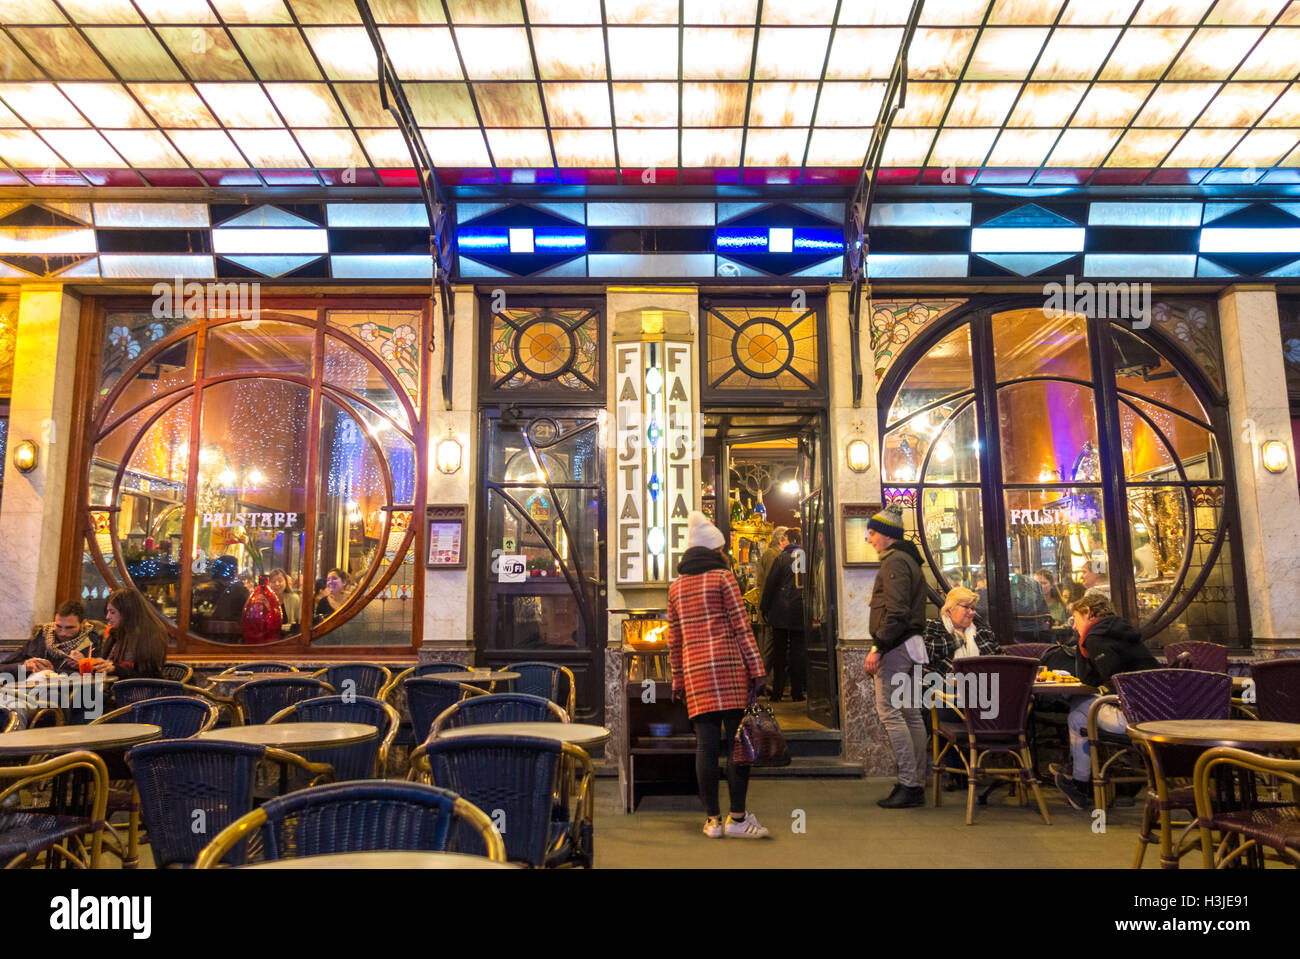 Brussels restaurant Le Falstaff cafe bar pub. Famous popular pub with Art-Nouveau interior. Stock Photo